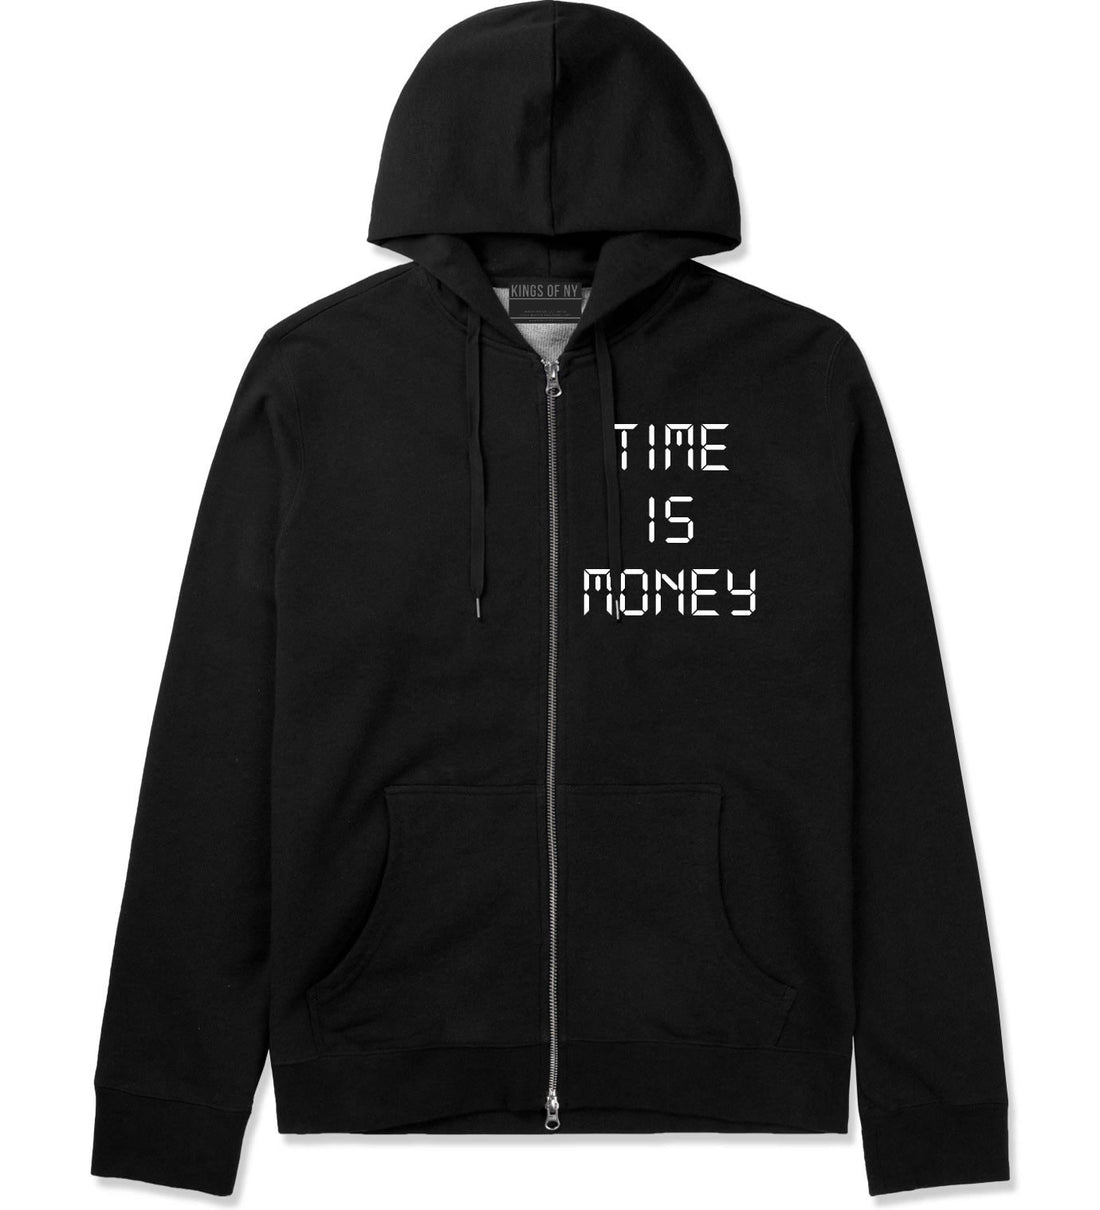 Time Is Money Zip Up Hoodie in Black By Kings Of NY